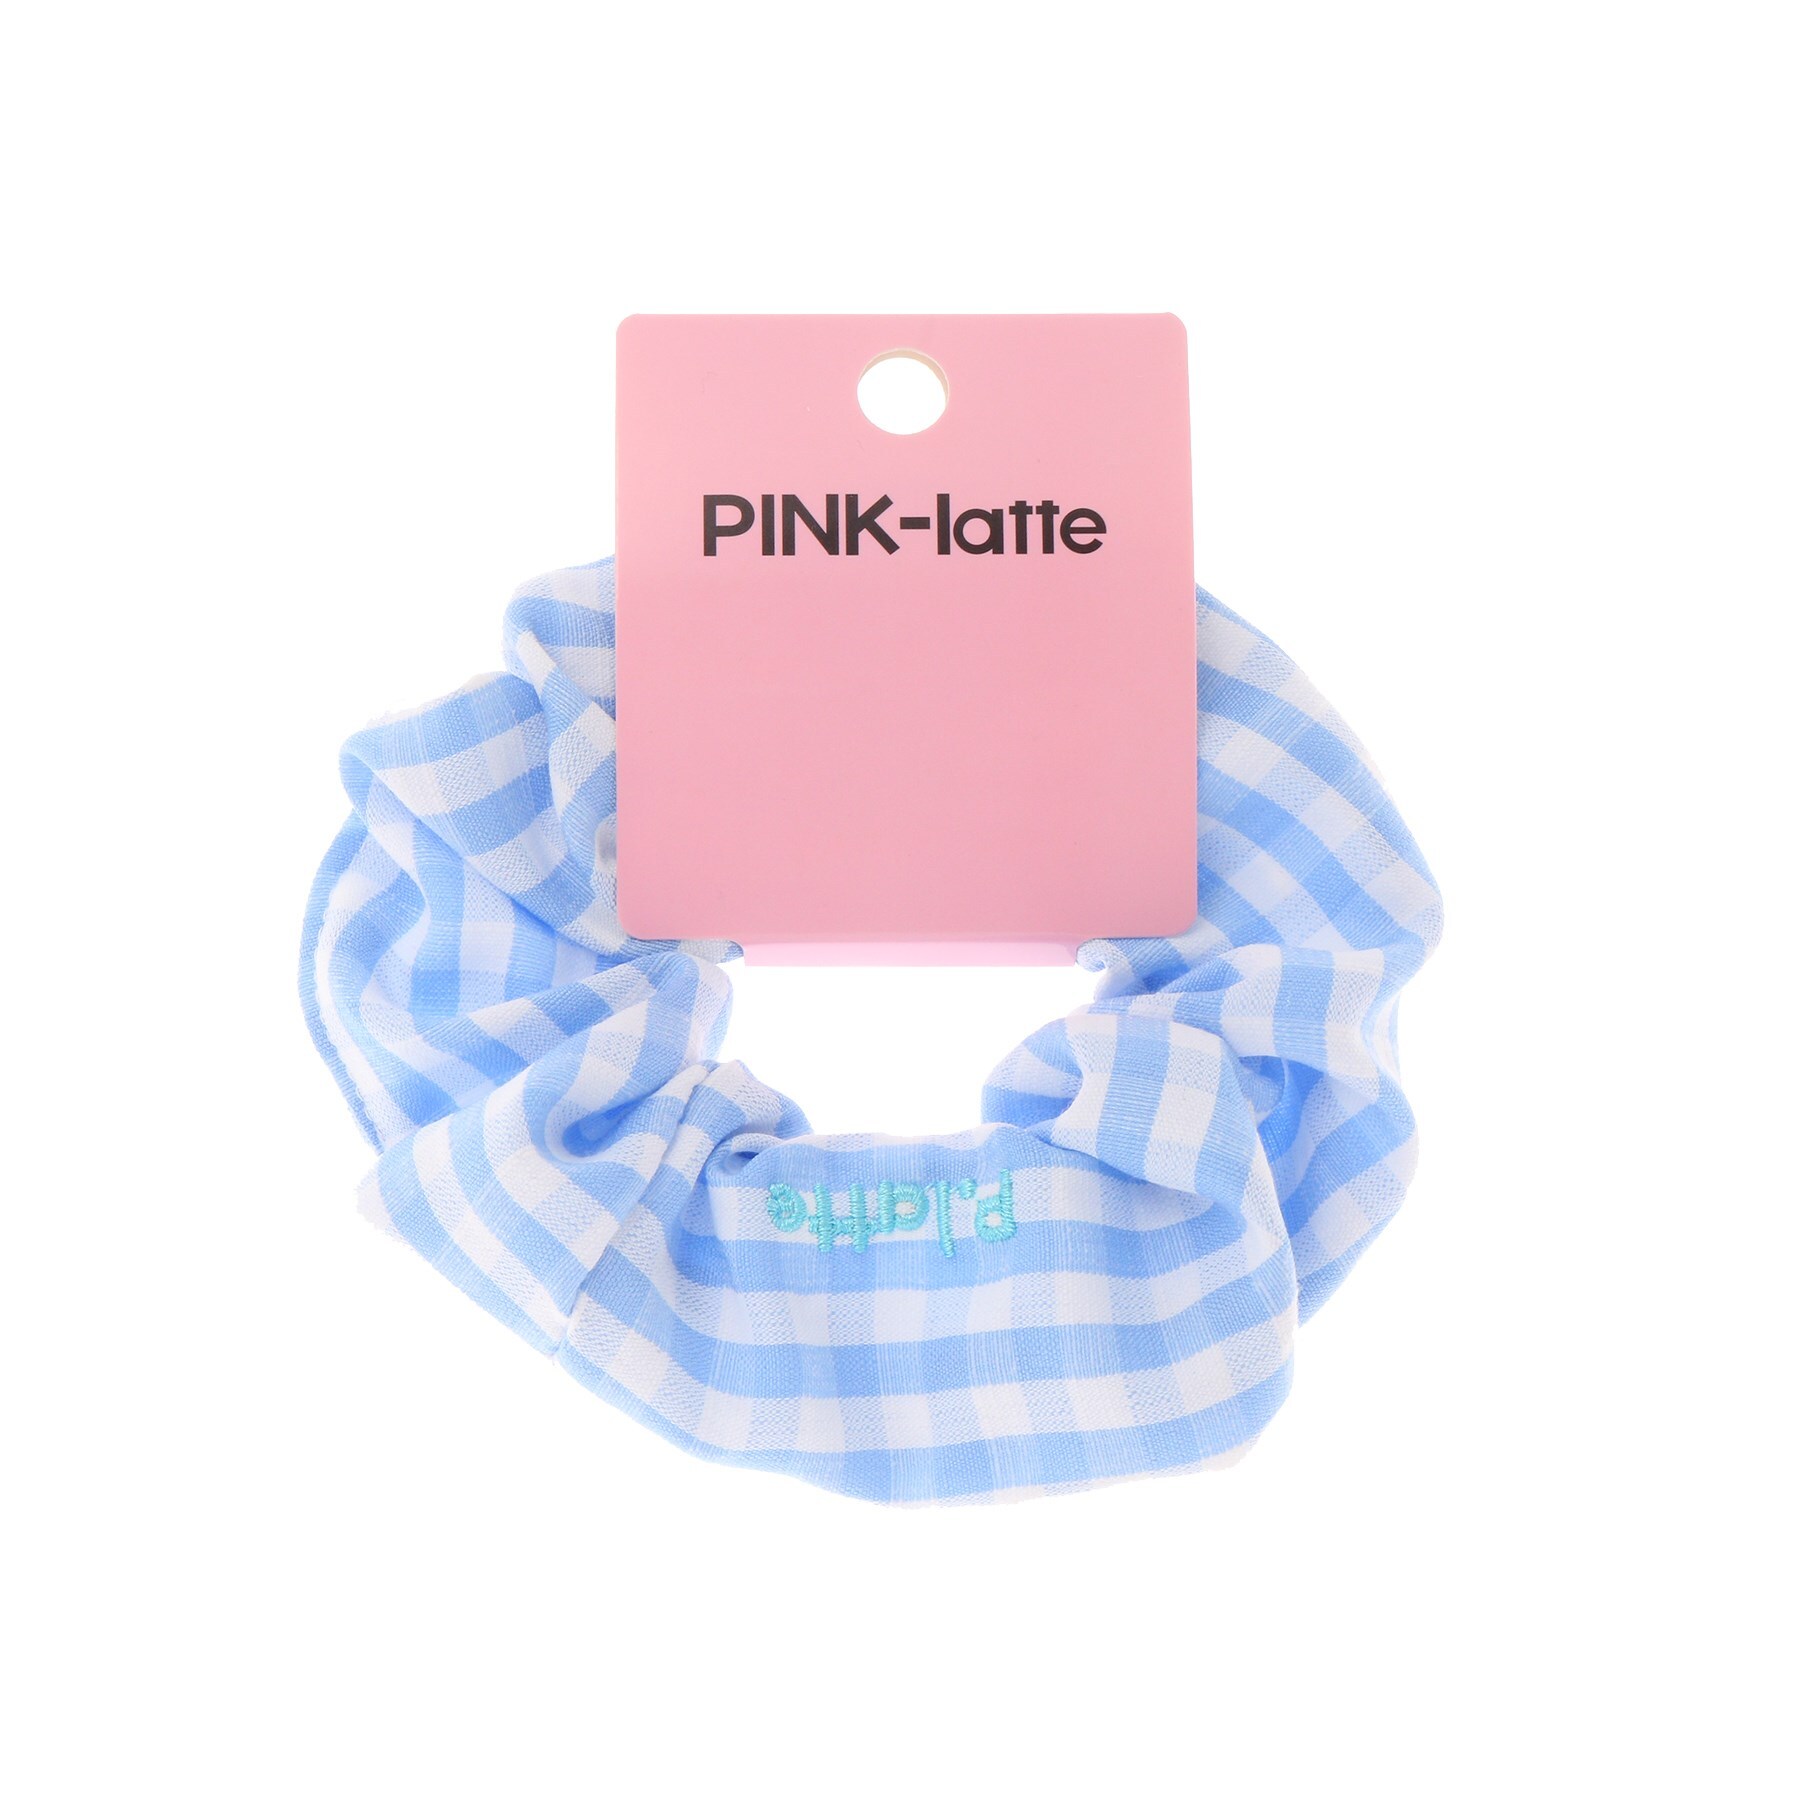 ピンク ラテ(PINK-latte)のギンガムシュシュ1